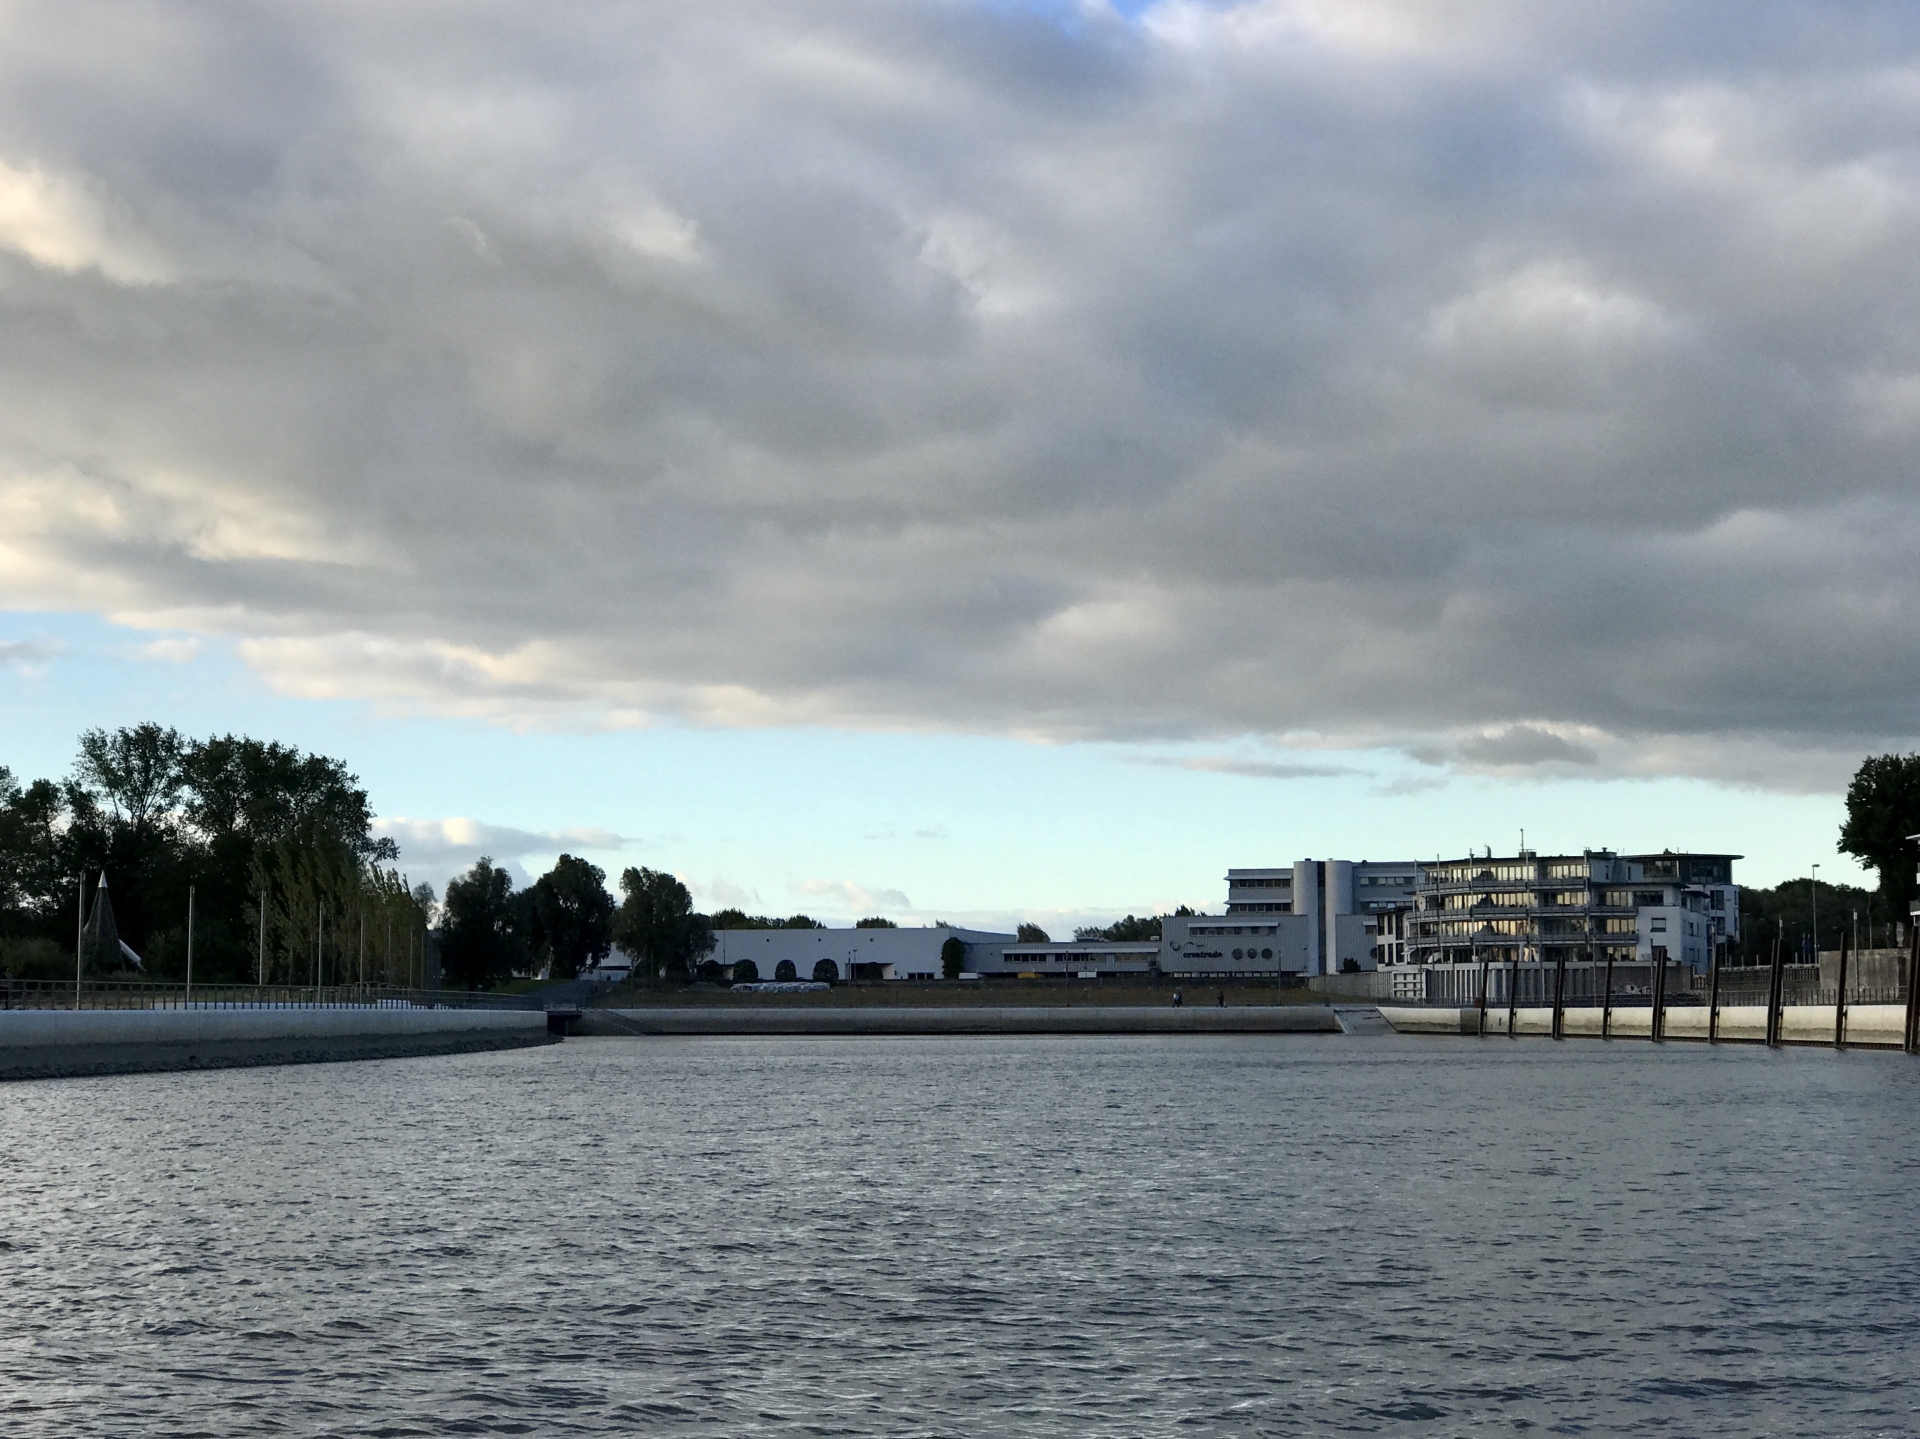 2018-08-30 Mein Wedel - Schulauer Hafen von Westmole bei bewölktem Himmel